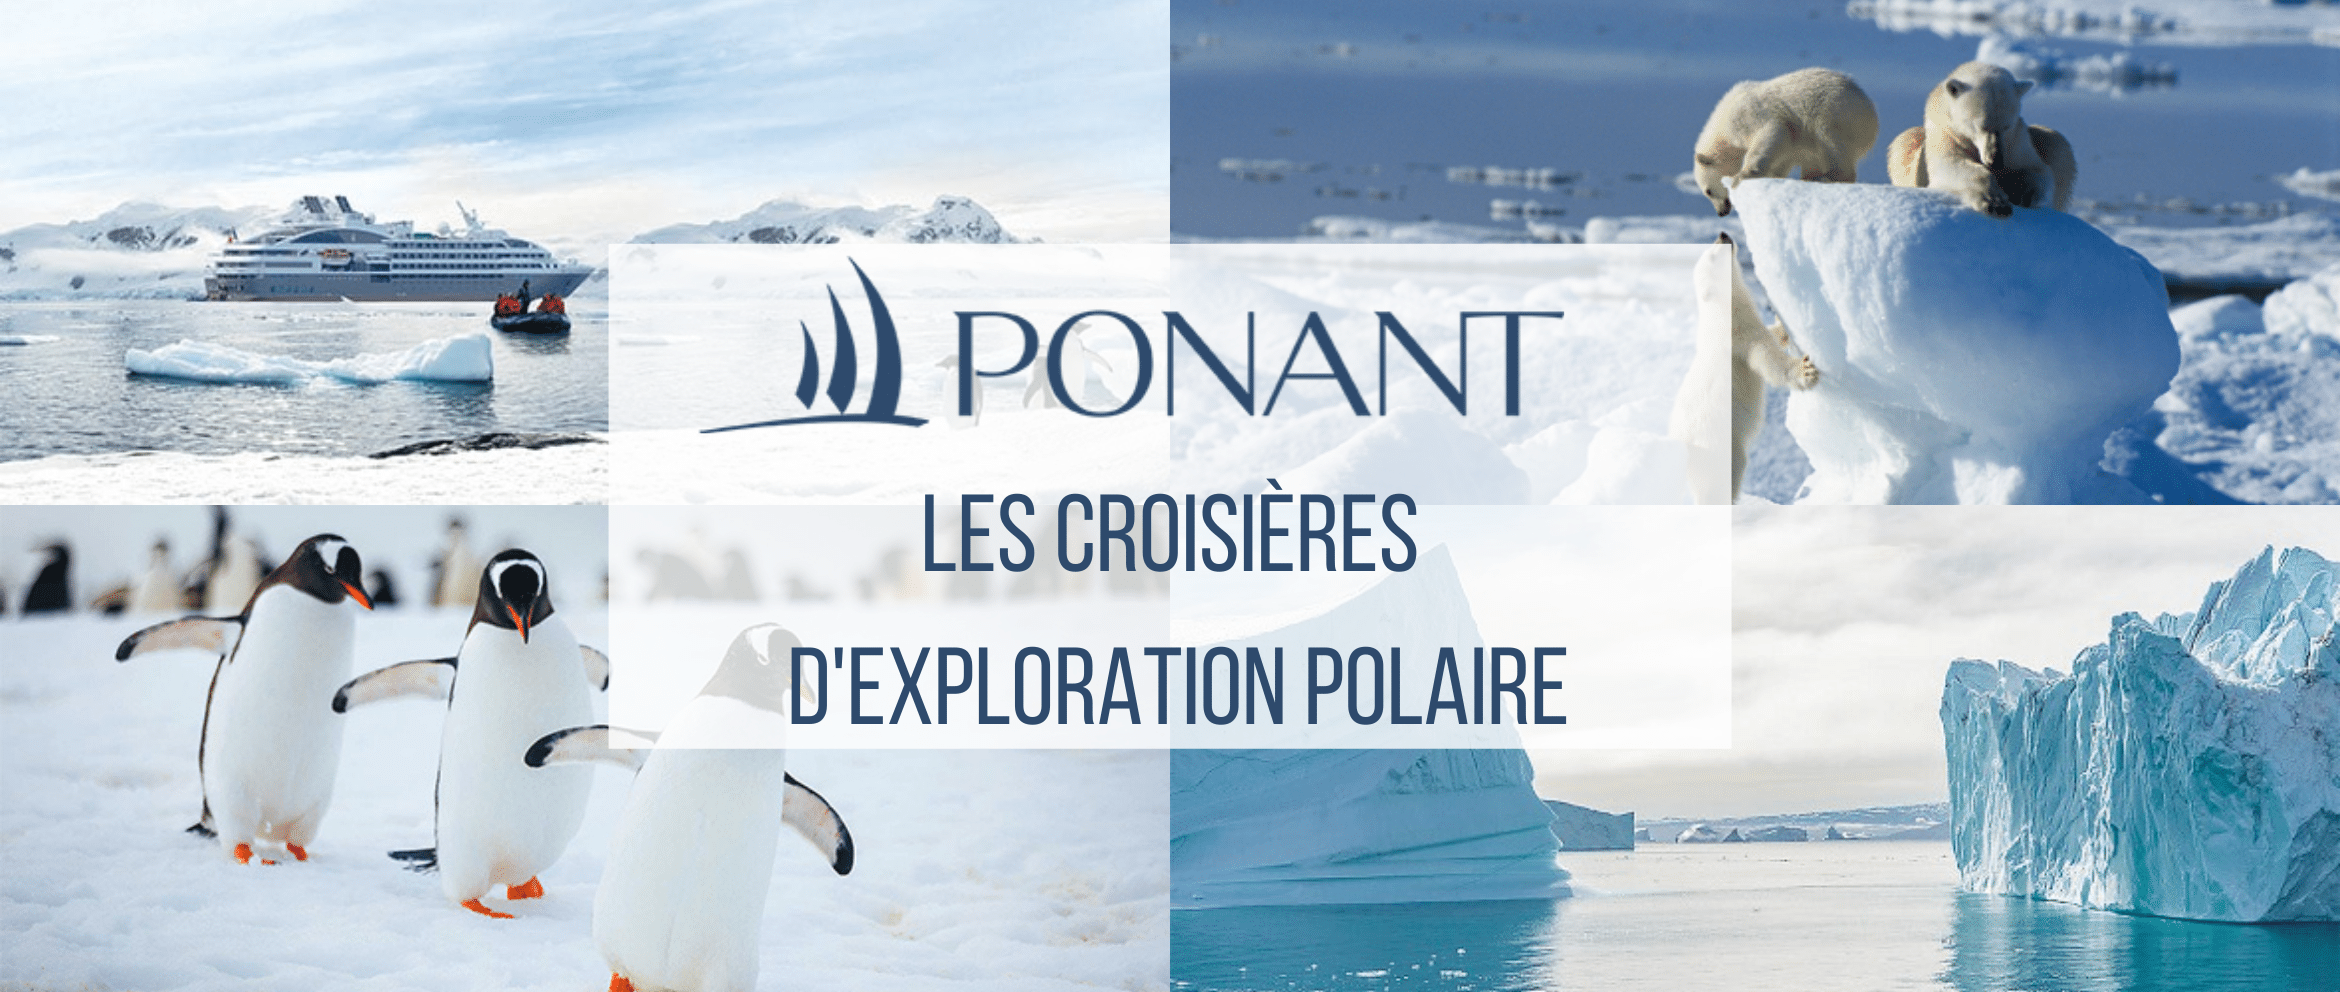 PONANT destinations polaires